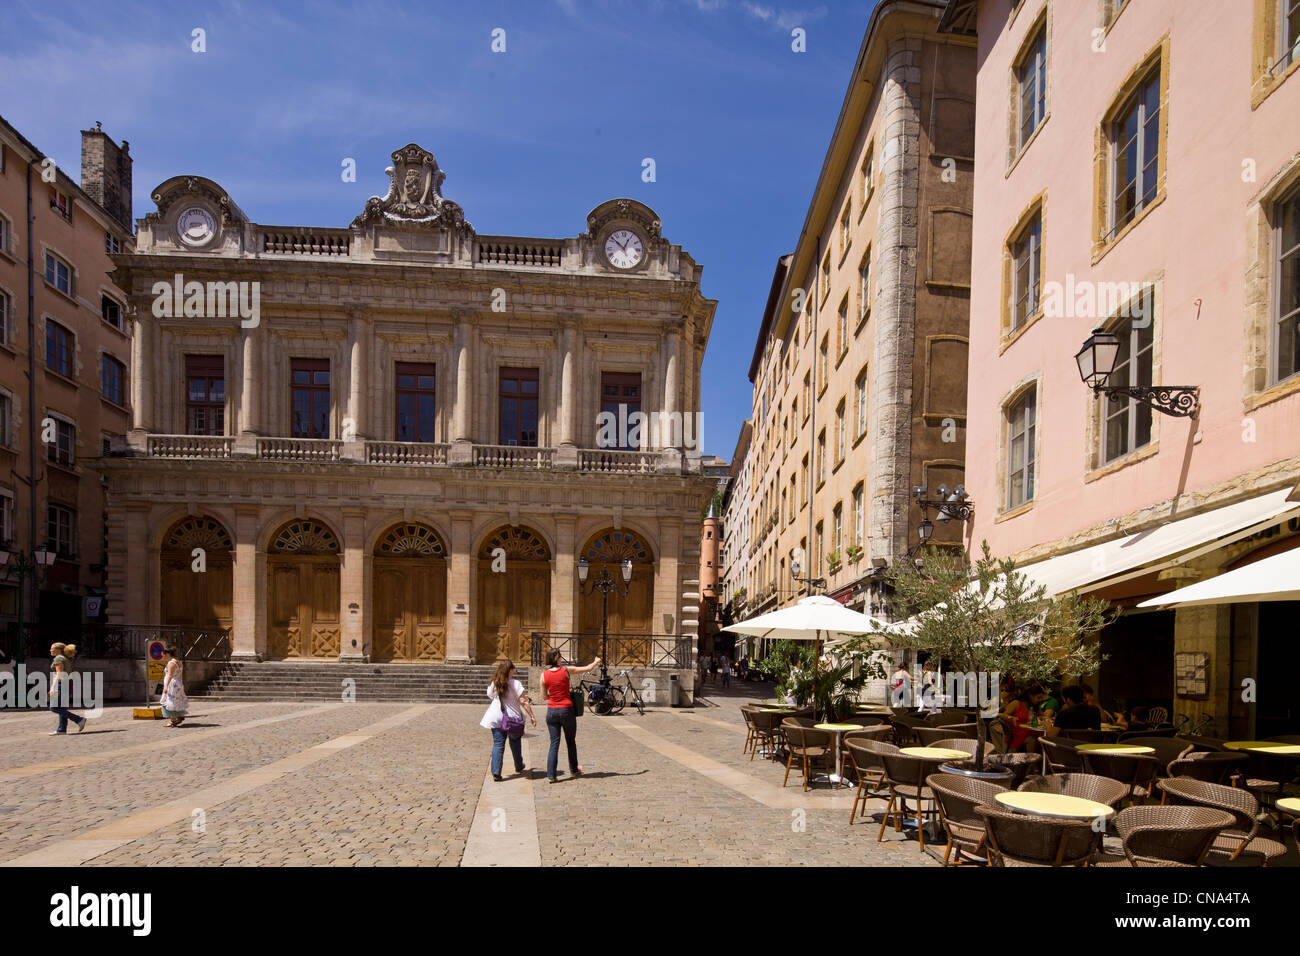 Francia, Ródano, Lyon, sitio histórico catalogado como Patrimonio Mundial por la UNESCO, Vieux Lyon (Casco Antiguo), Place du Change Foto de stock